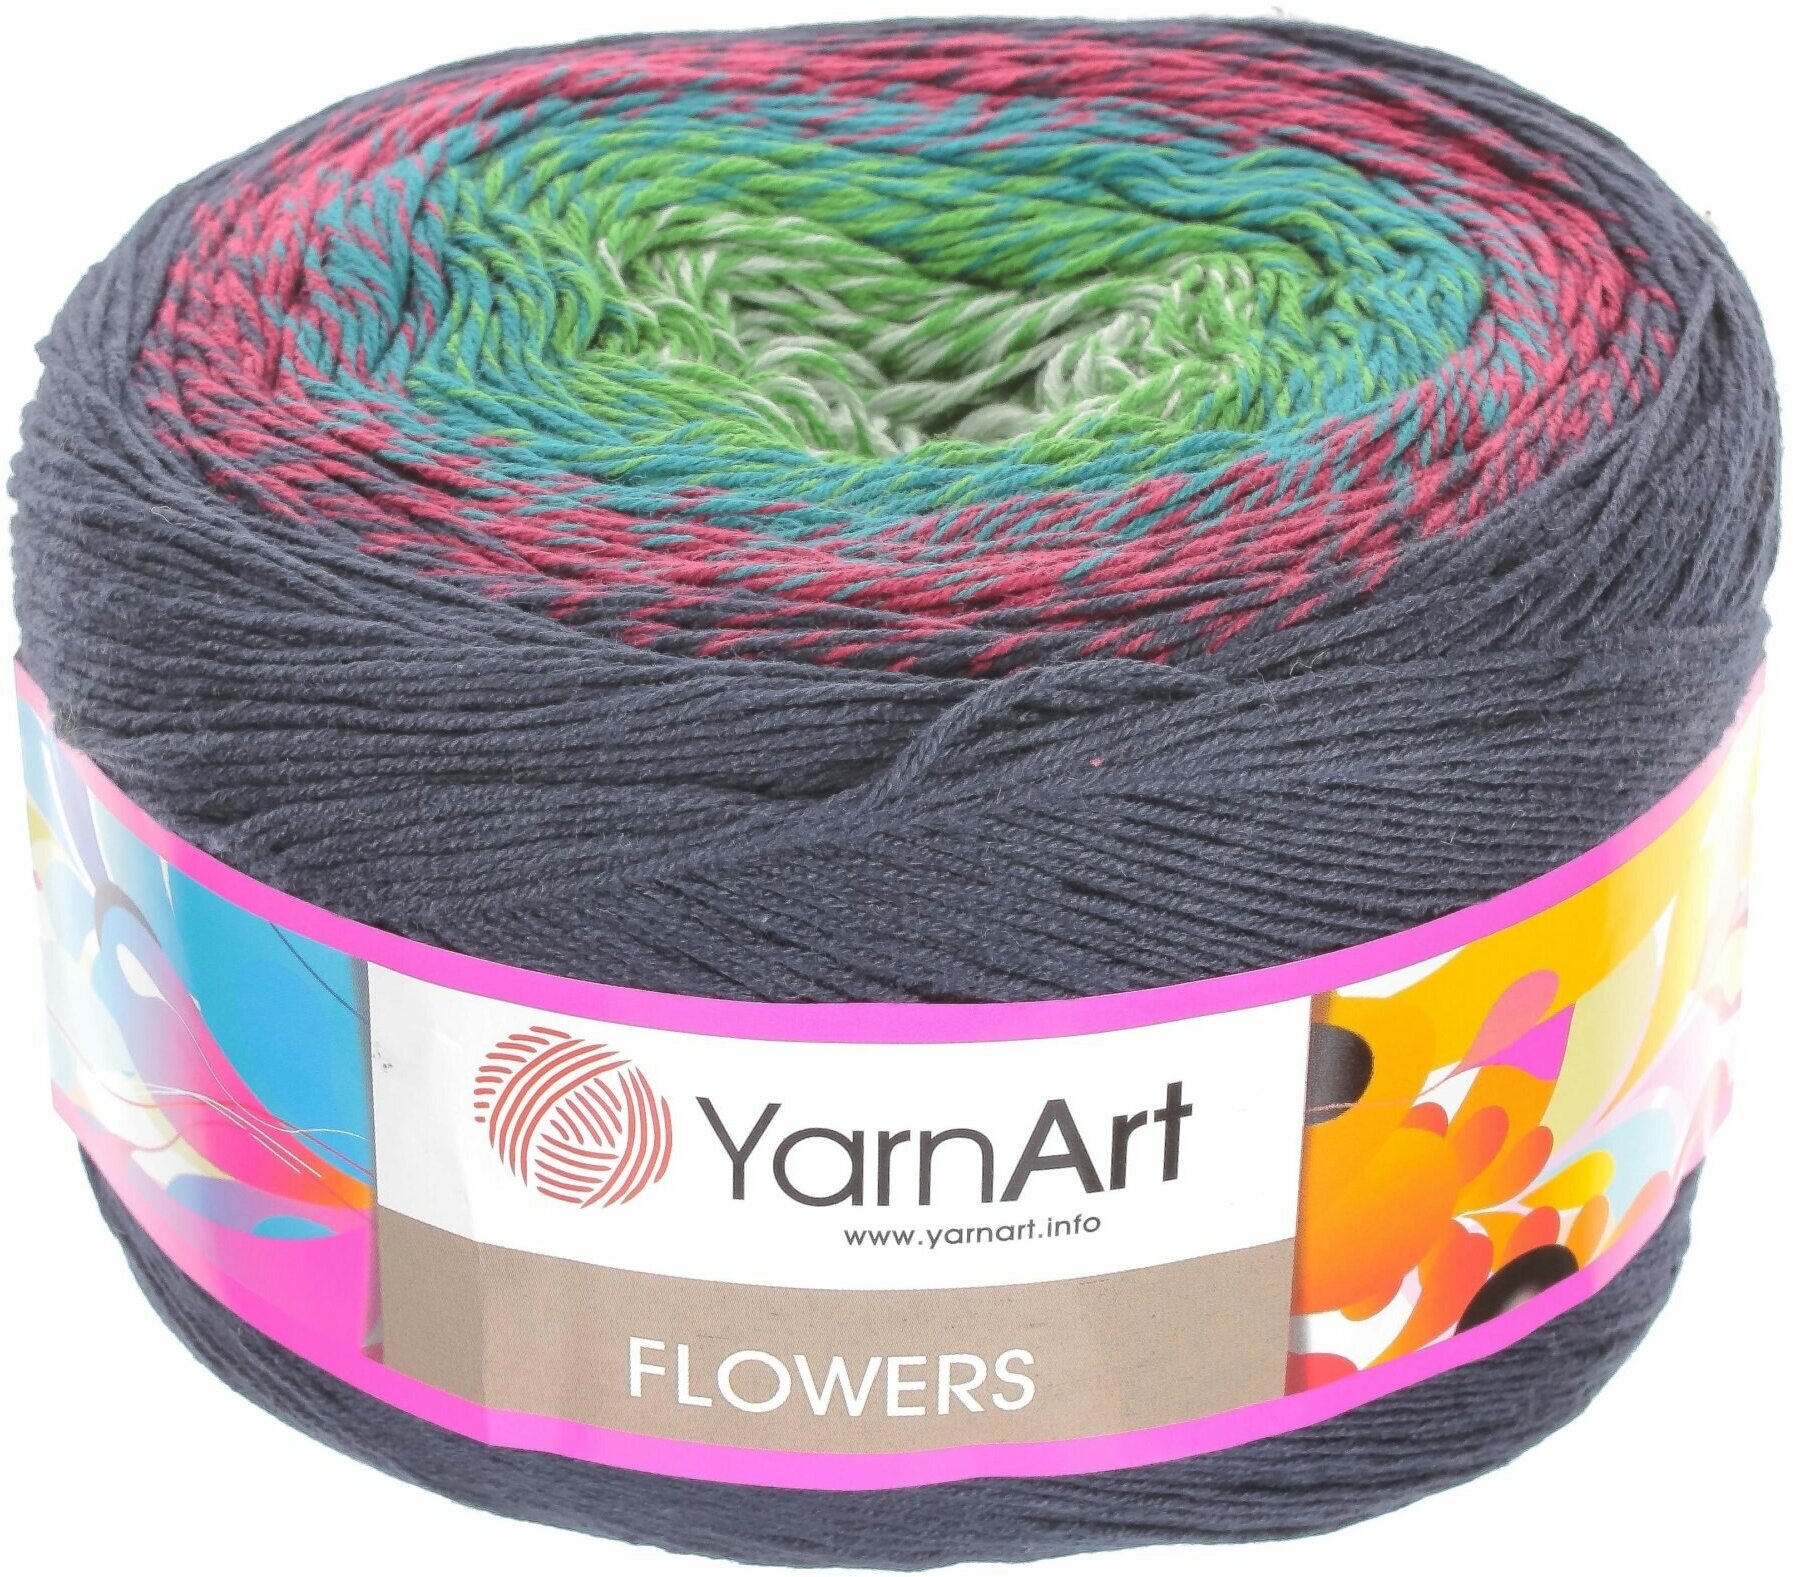 Пряжа YarnArt Flowers темно синий-бордо-зеленый-св. серый (266), 55%хлопок/45%акрил, 1000м, 250г, 1шт